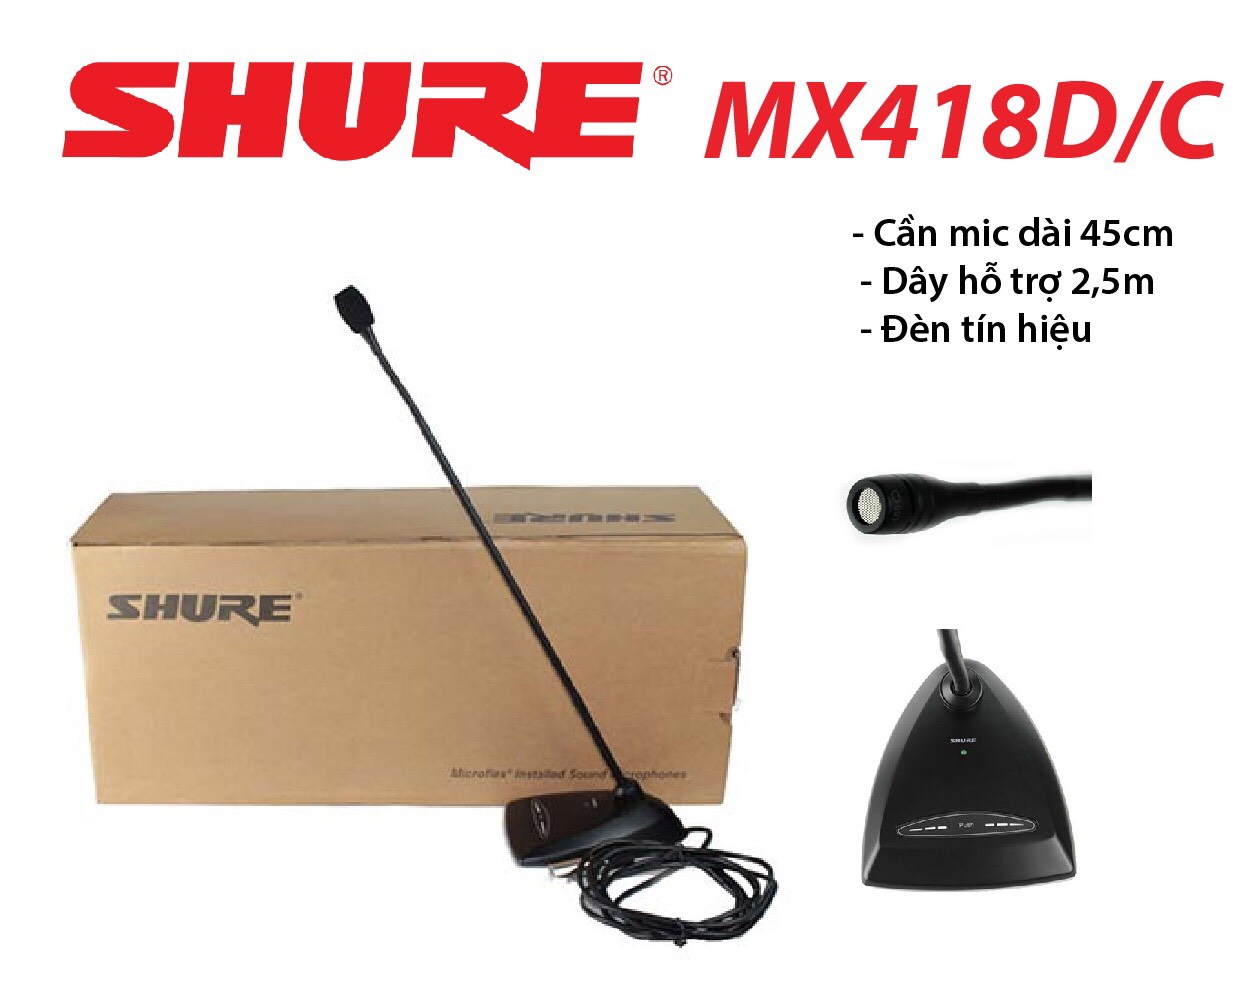 Micro cổ ngỗng đơn hướng Shure MX418D-C